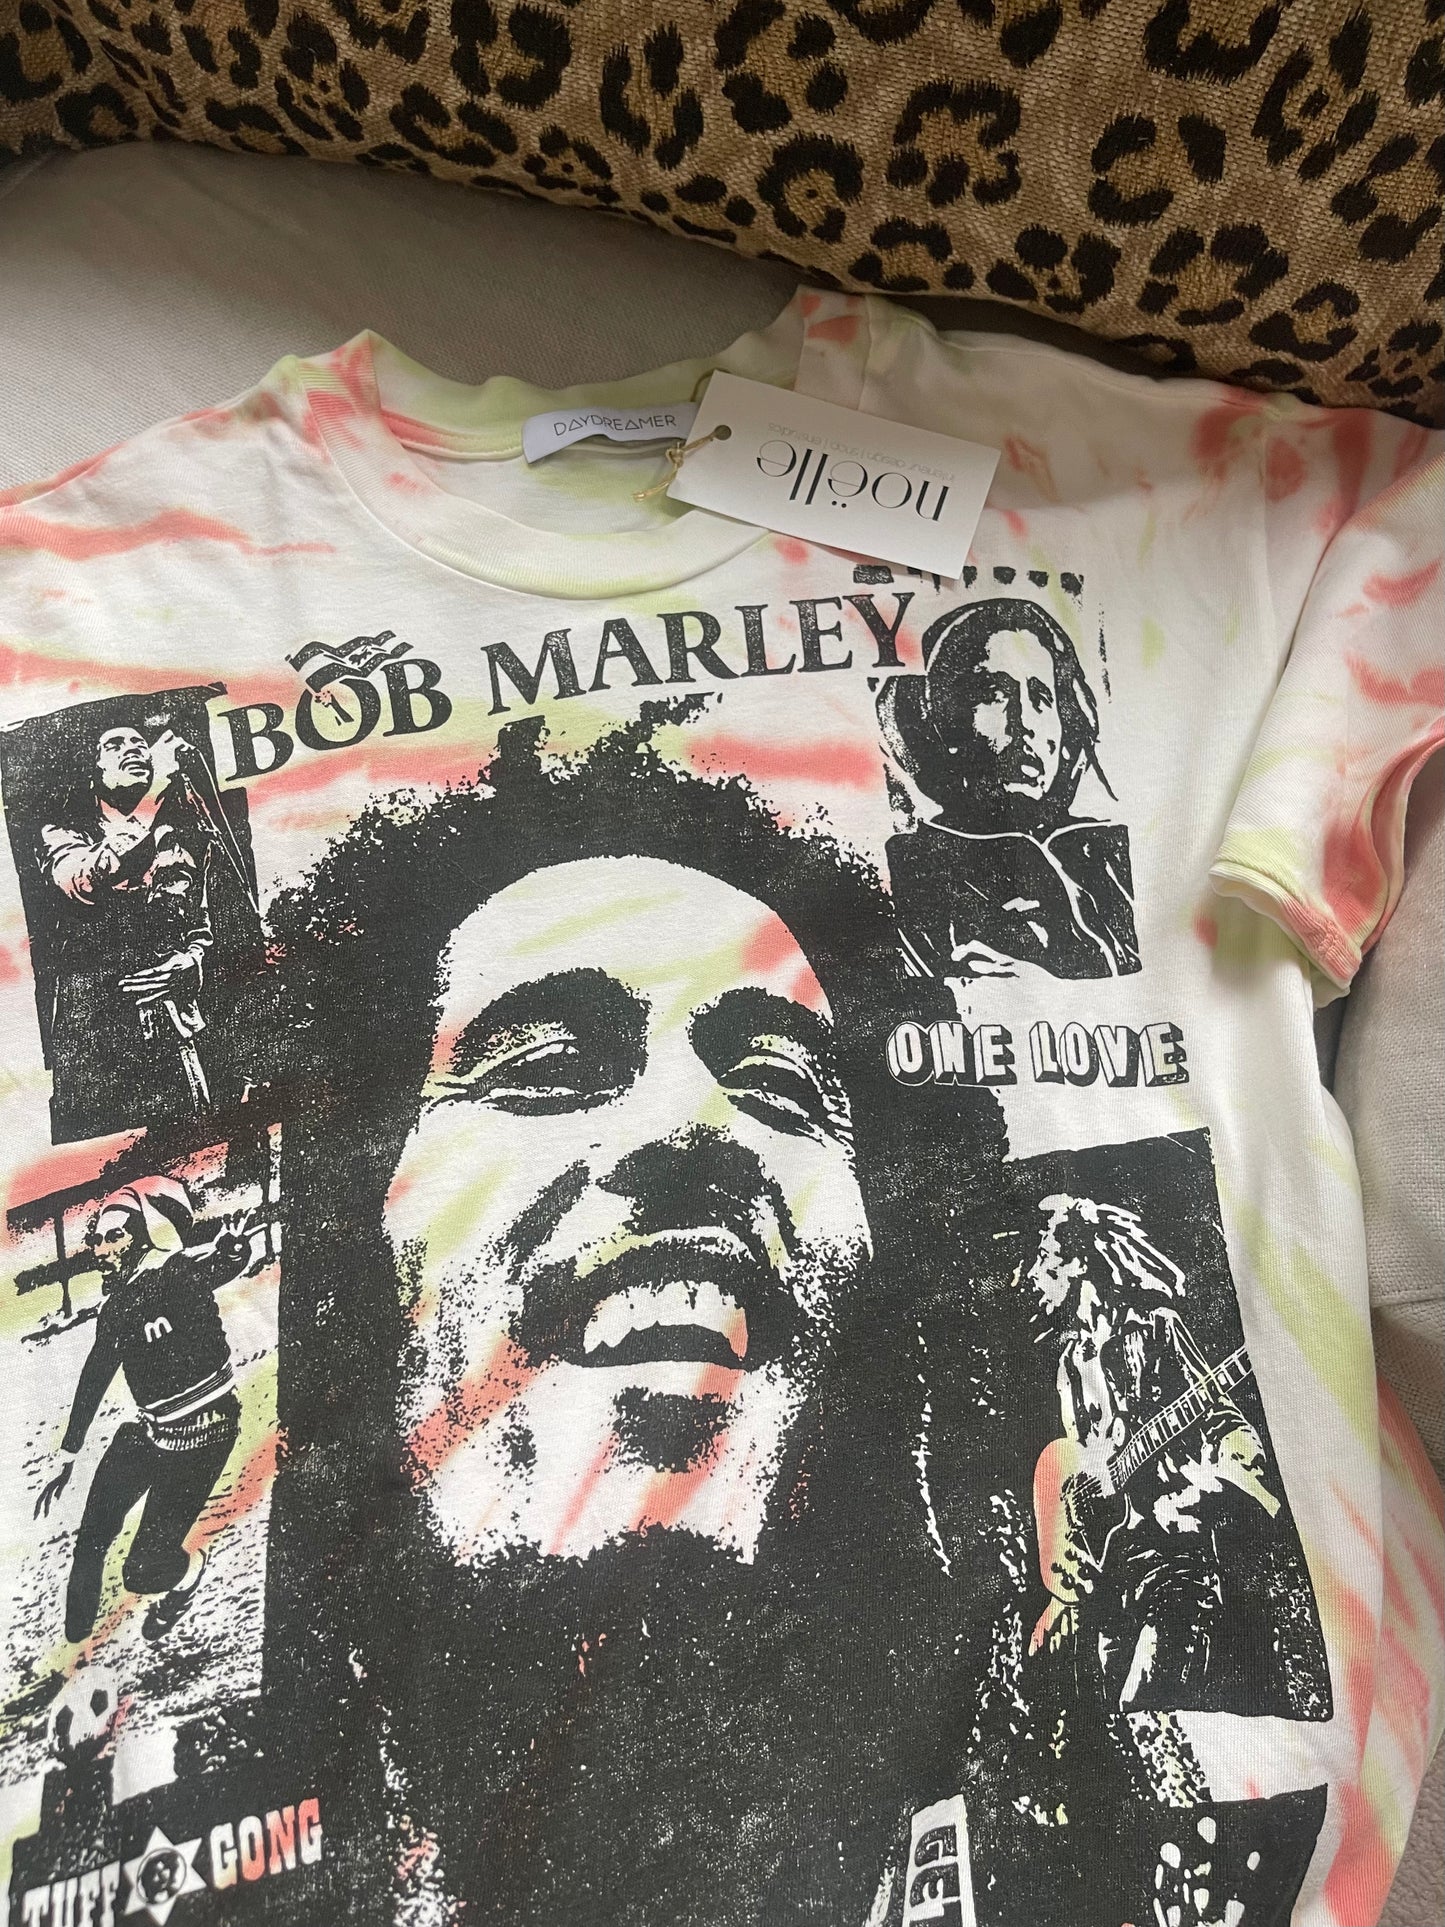 Bob Marley size M